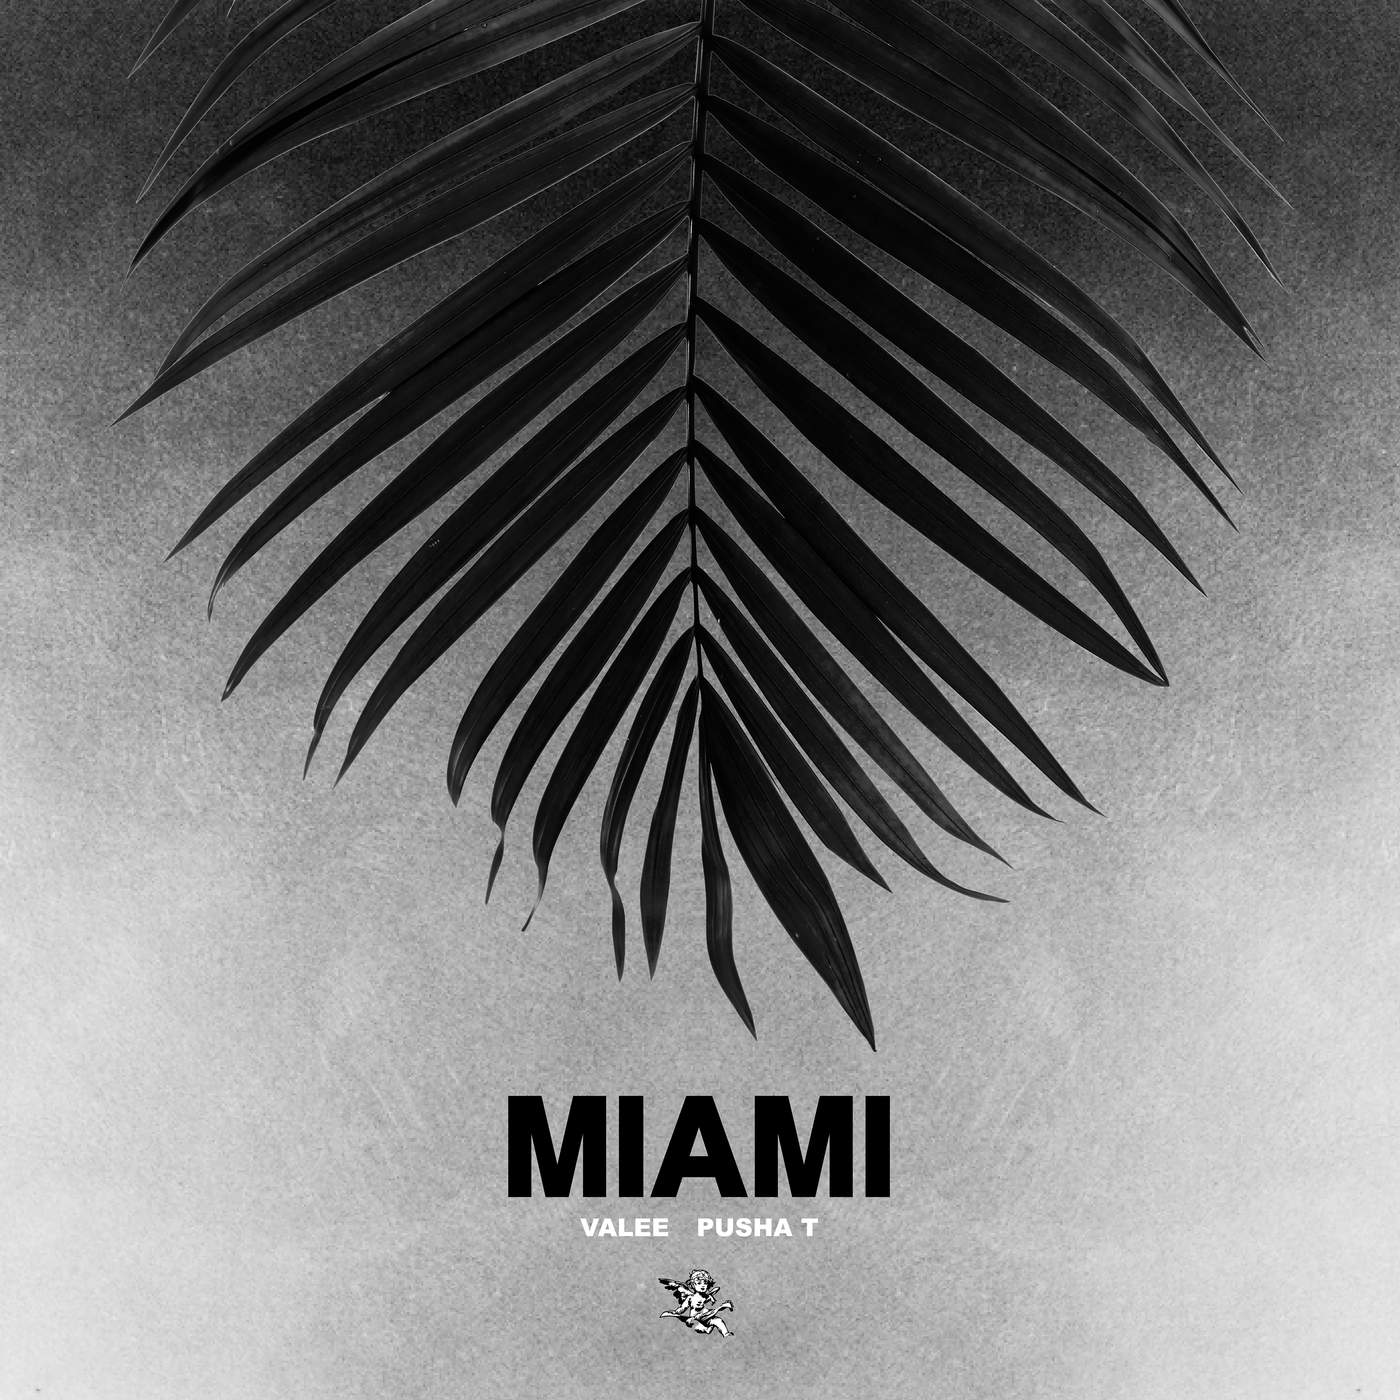 New Music: Valee – “Miami” Feat. Pusha T [LISTEN]